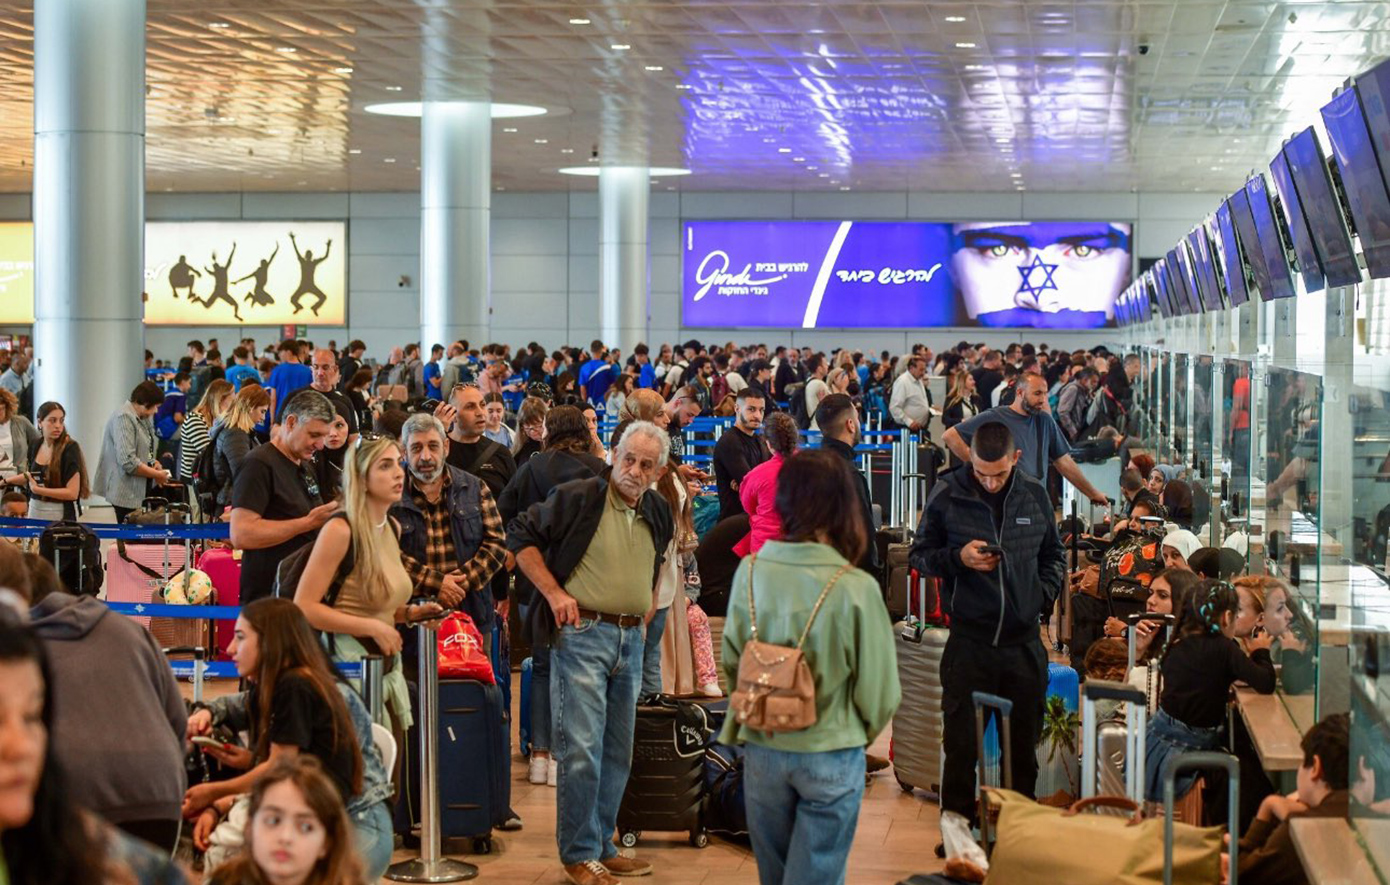 Χιλιάδες επιβάτες συνωστίζονται στο αεροδρόμιο Μπεν Γκουριόν του Τελ Αβίβ για να φύγουν από τη χώρα